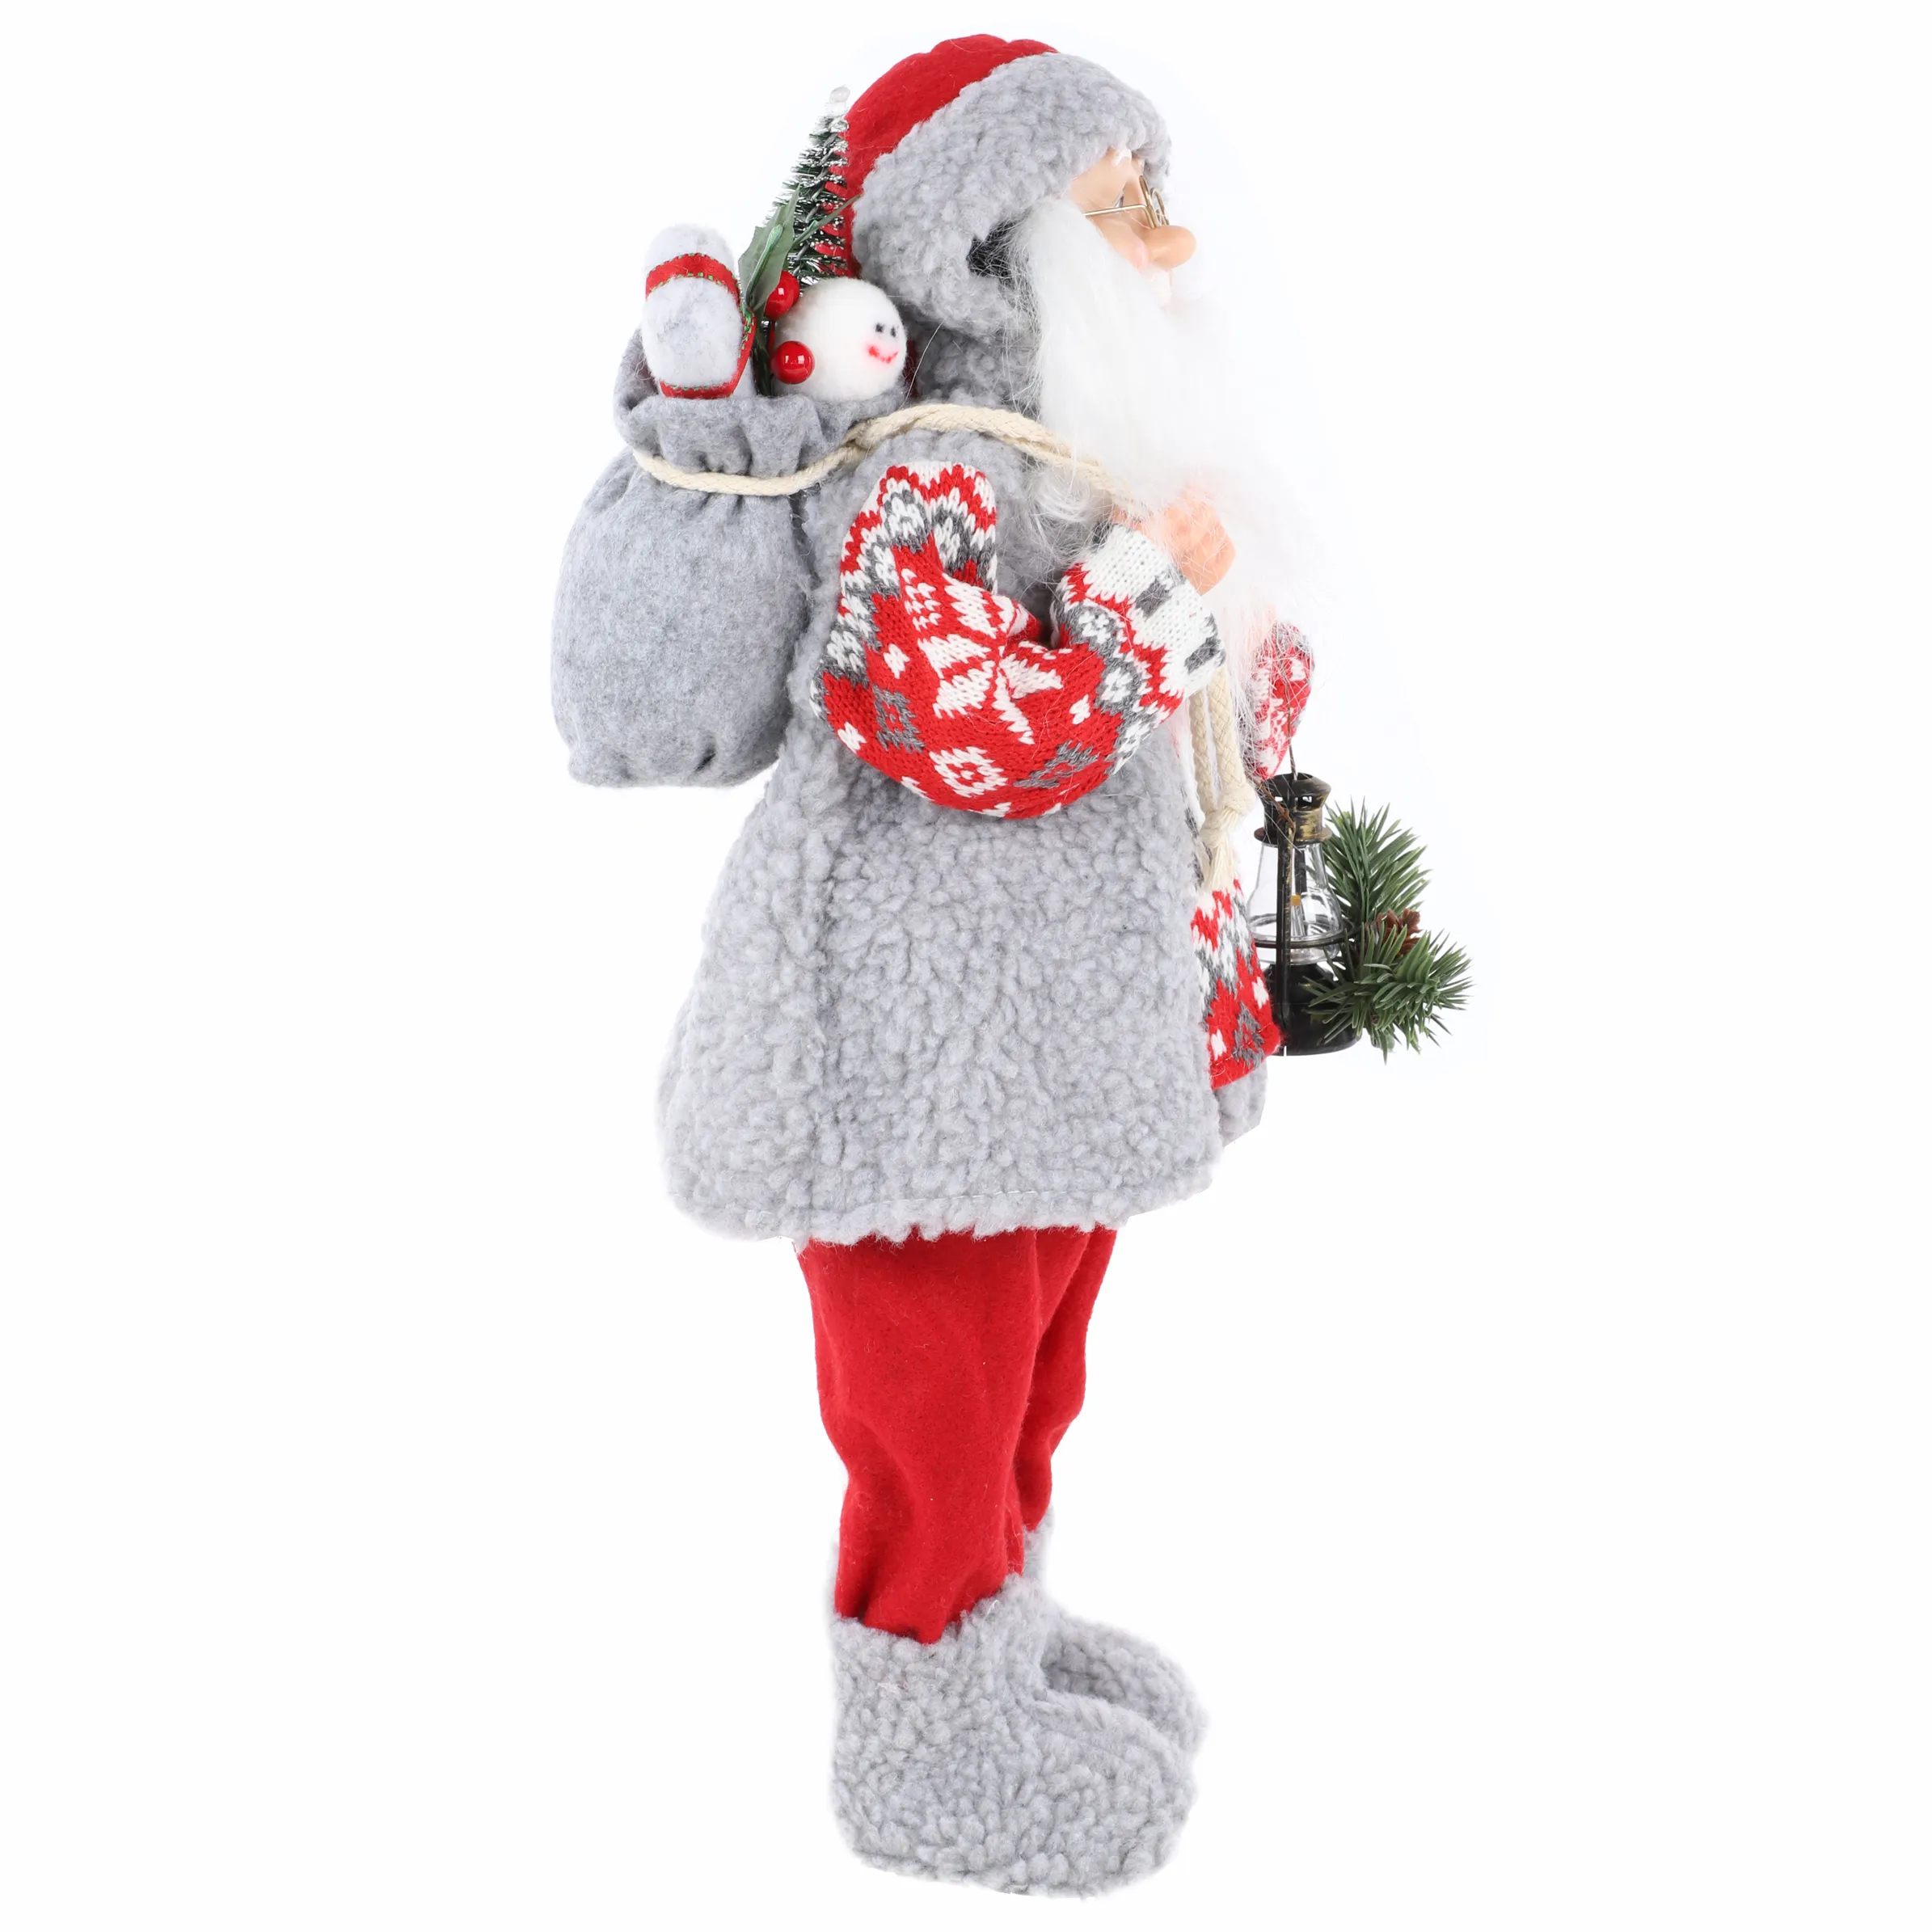 Weihnachten Weihnachtsmann stehend 46cm mi Grau 884043 GRAU/ROT 3